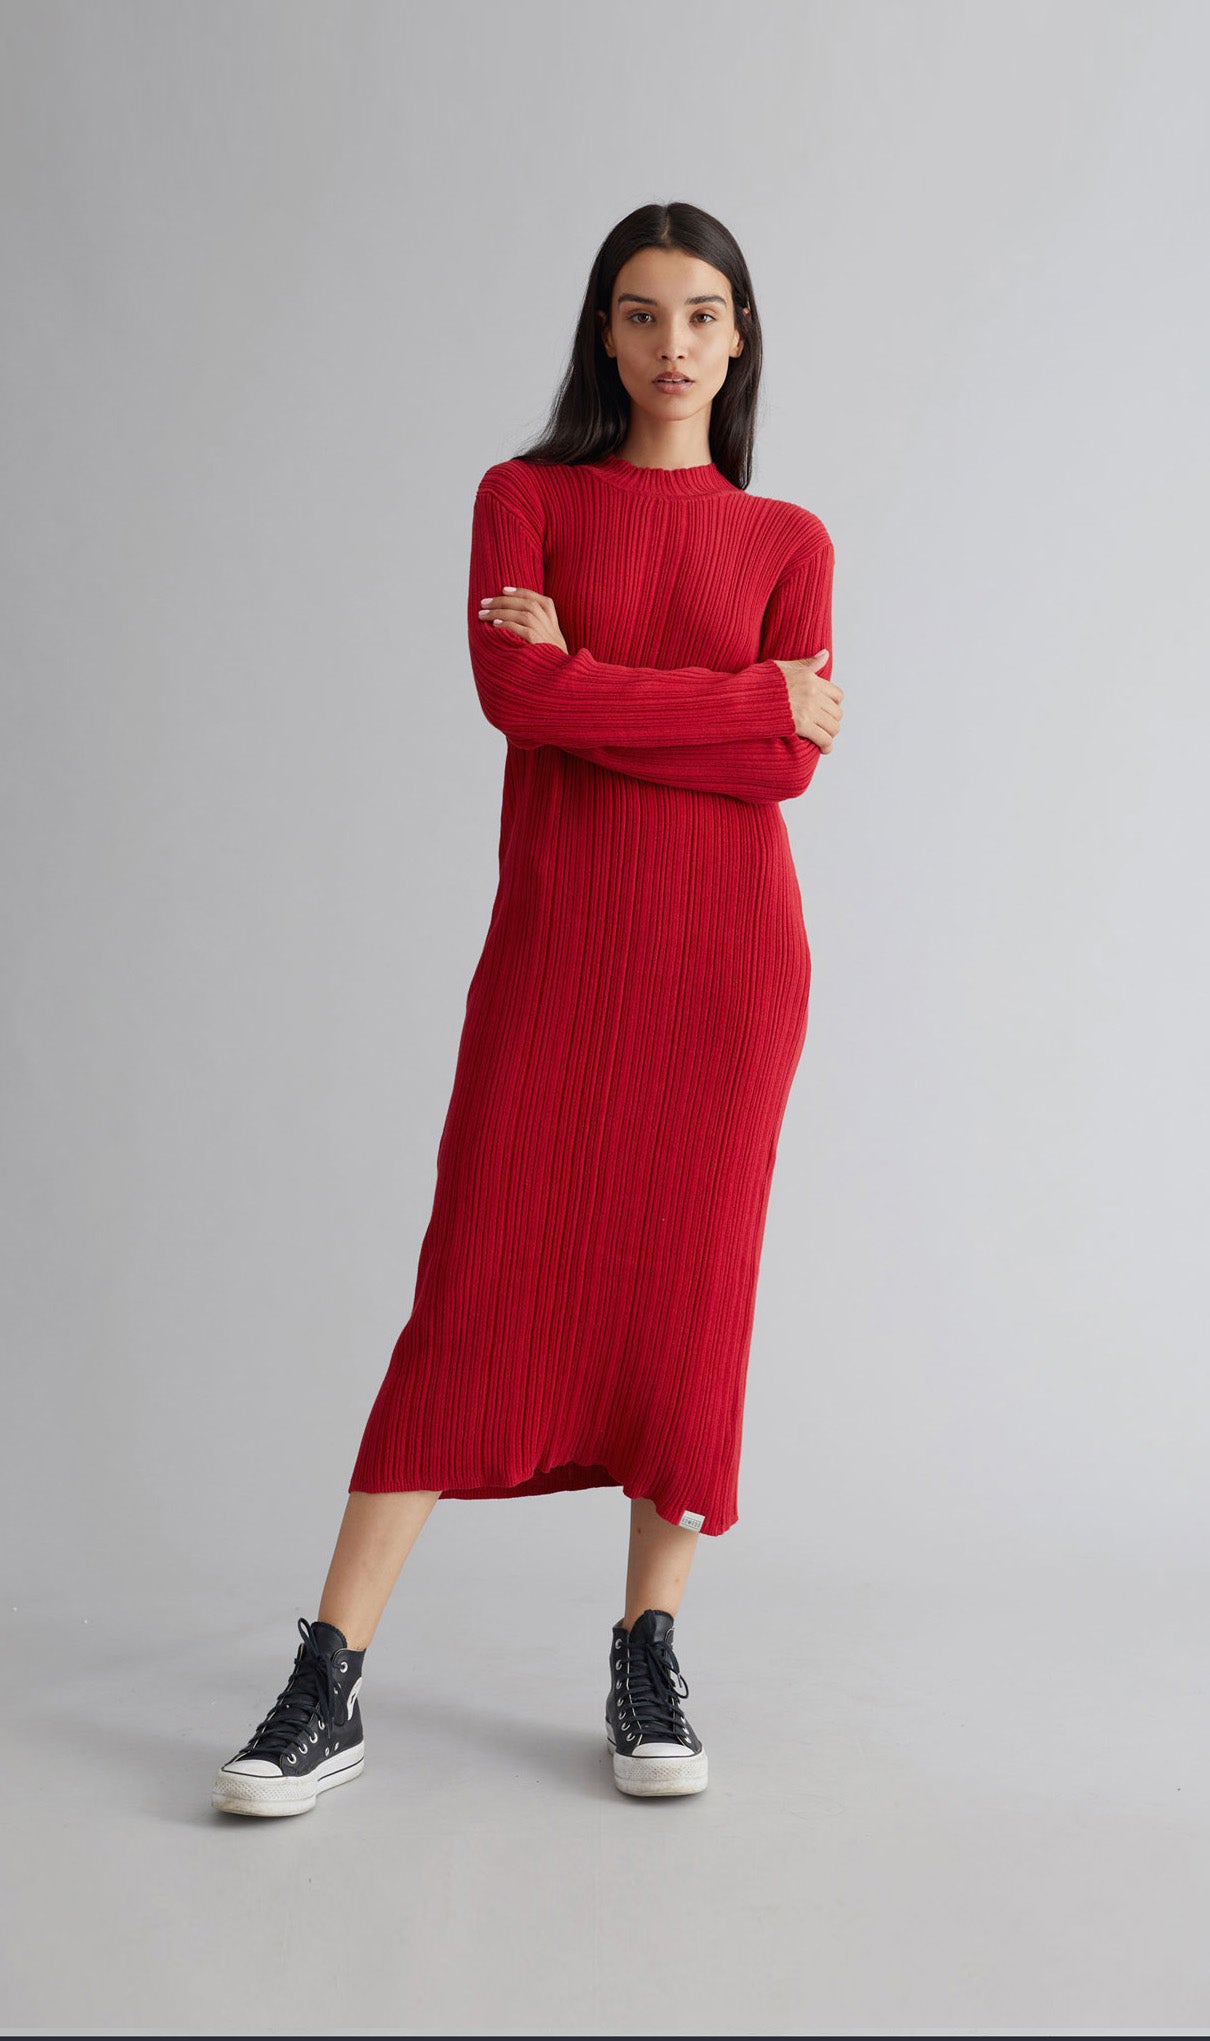 MAYUMI Womens Organic Cotton Dress Red, Size 2 / UK 10 / EUR 38